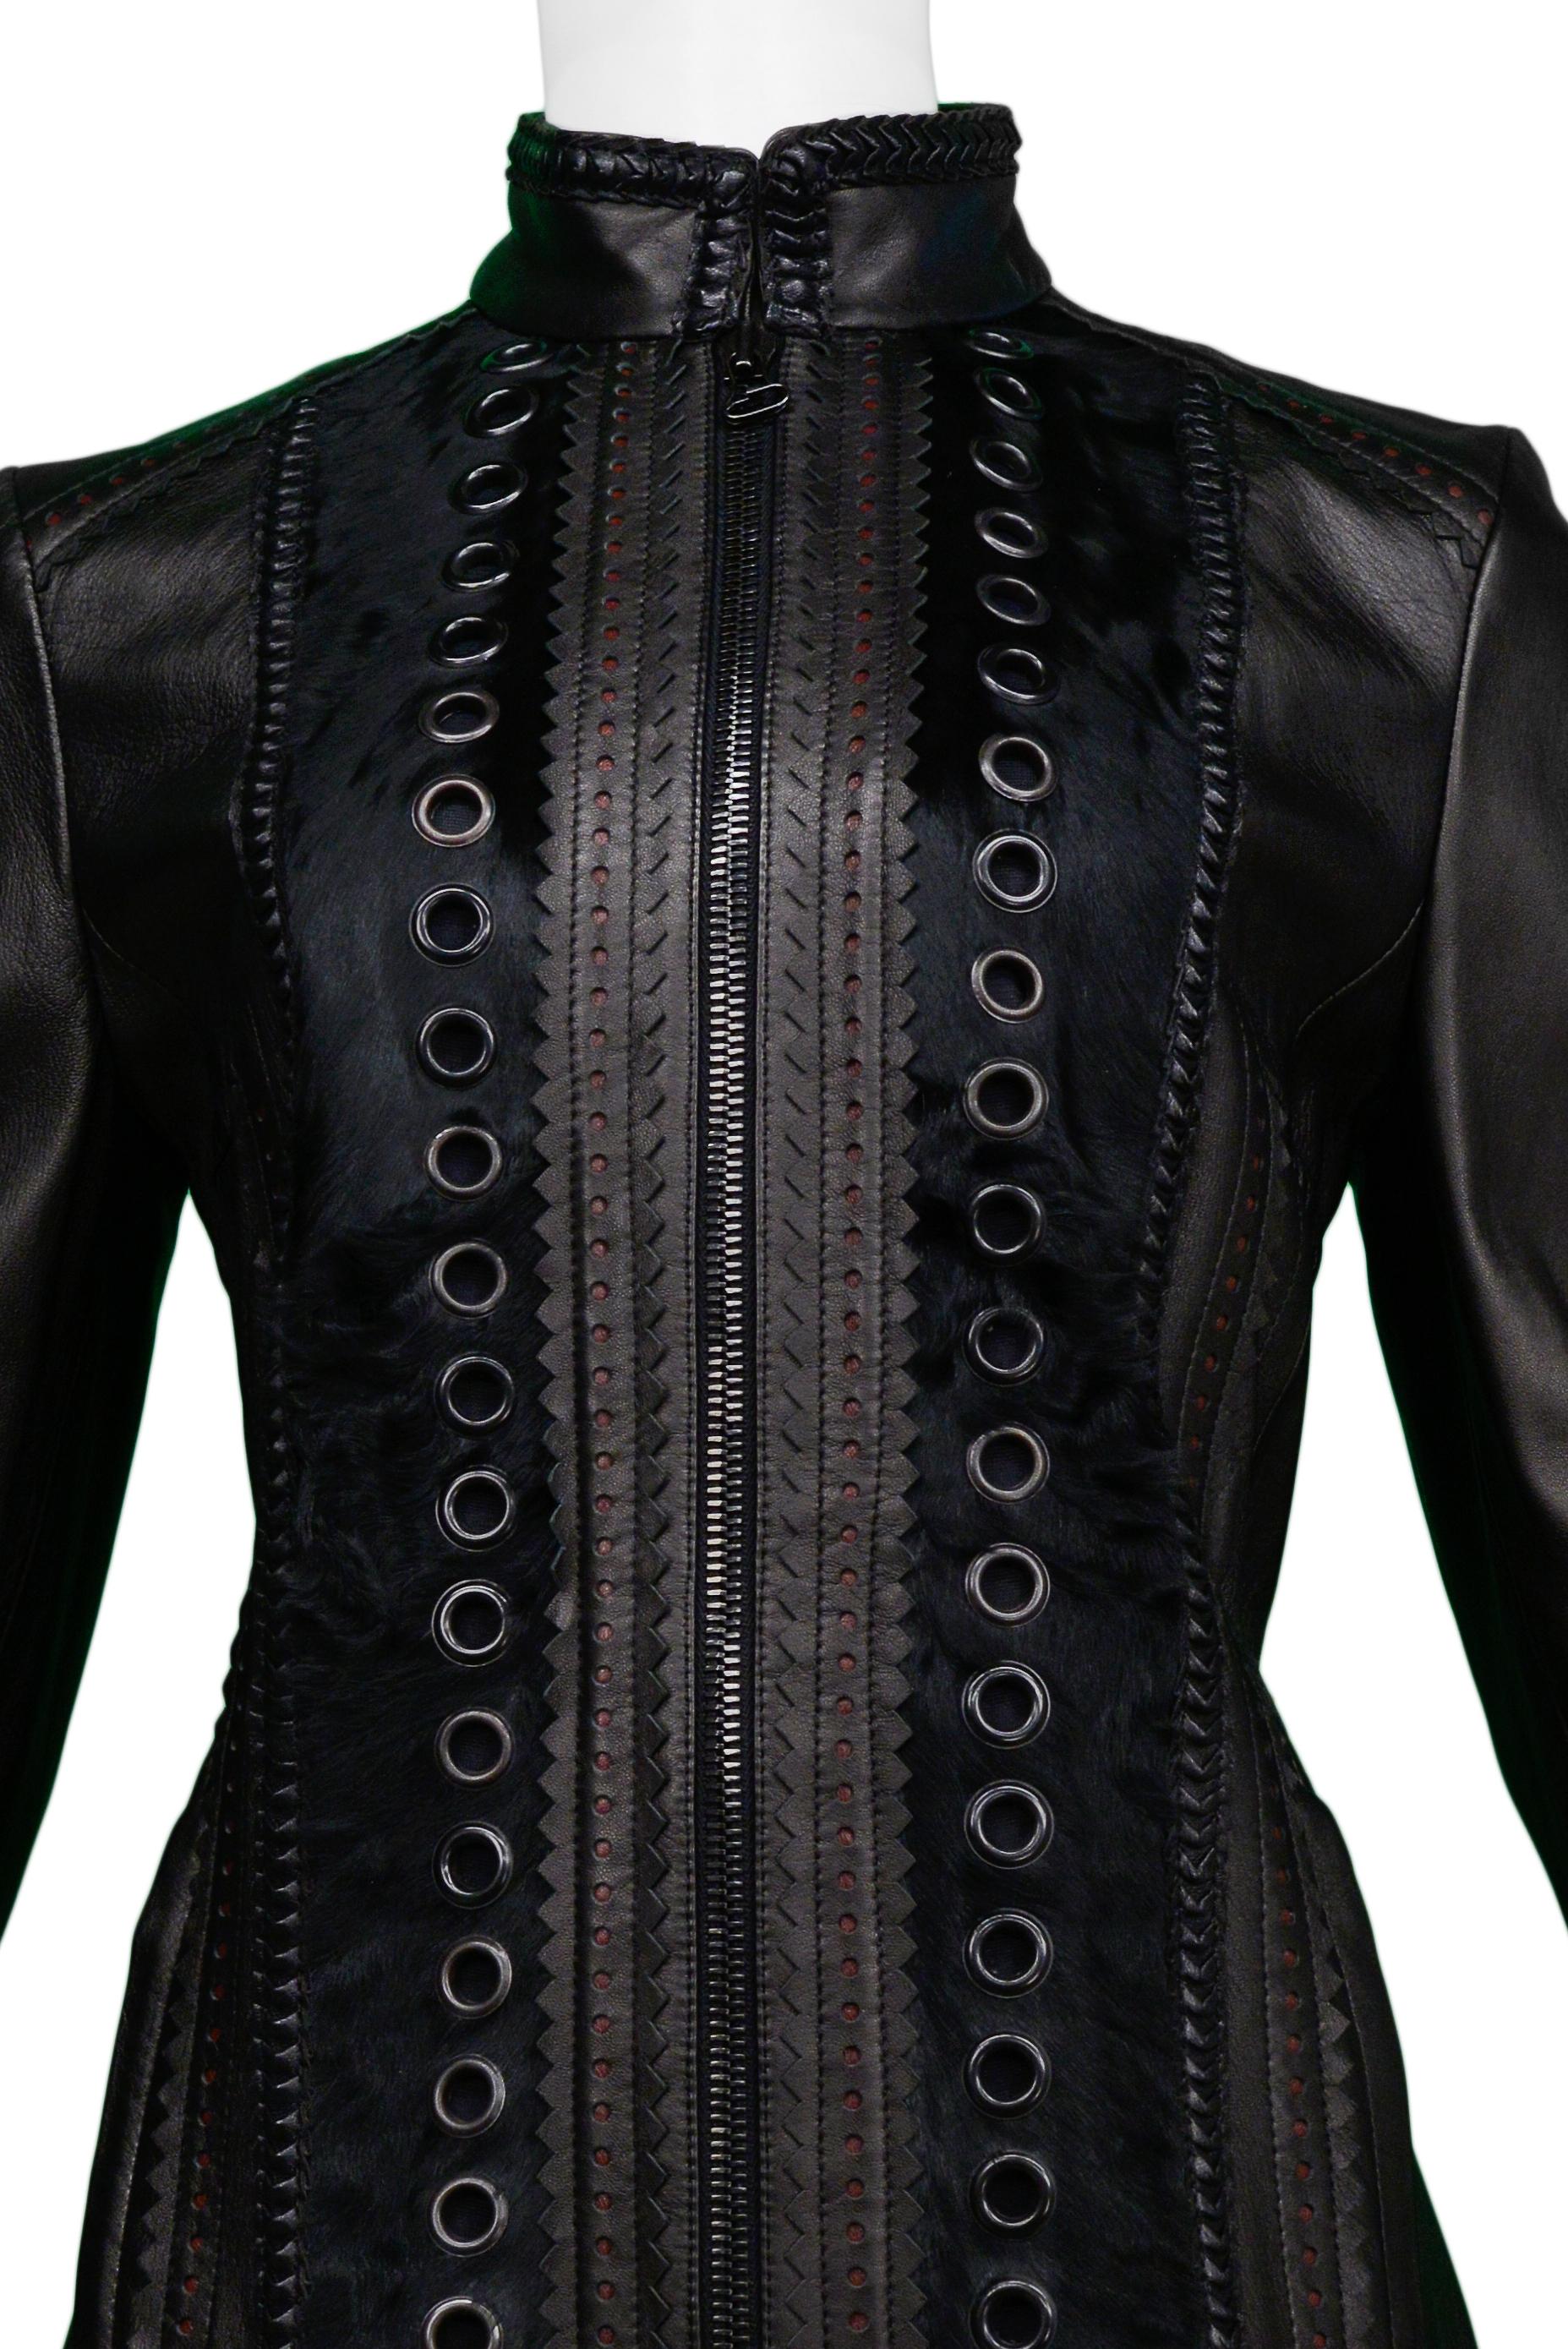 gianfranco ferre leather jacket